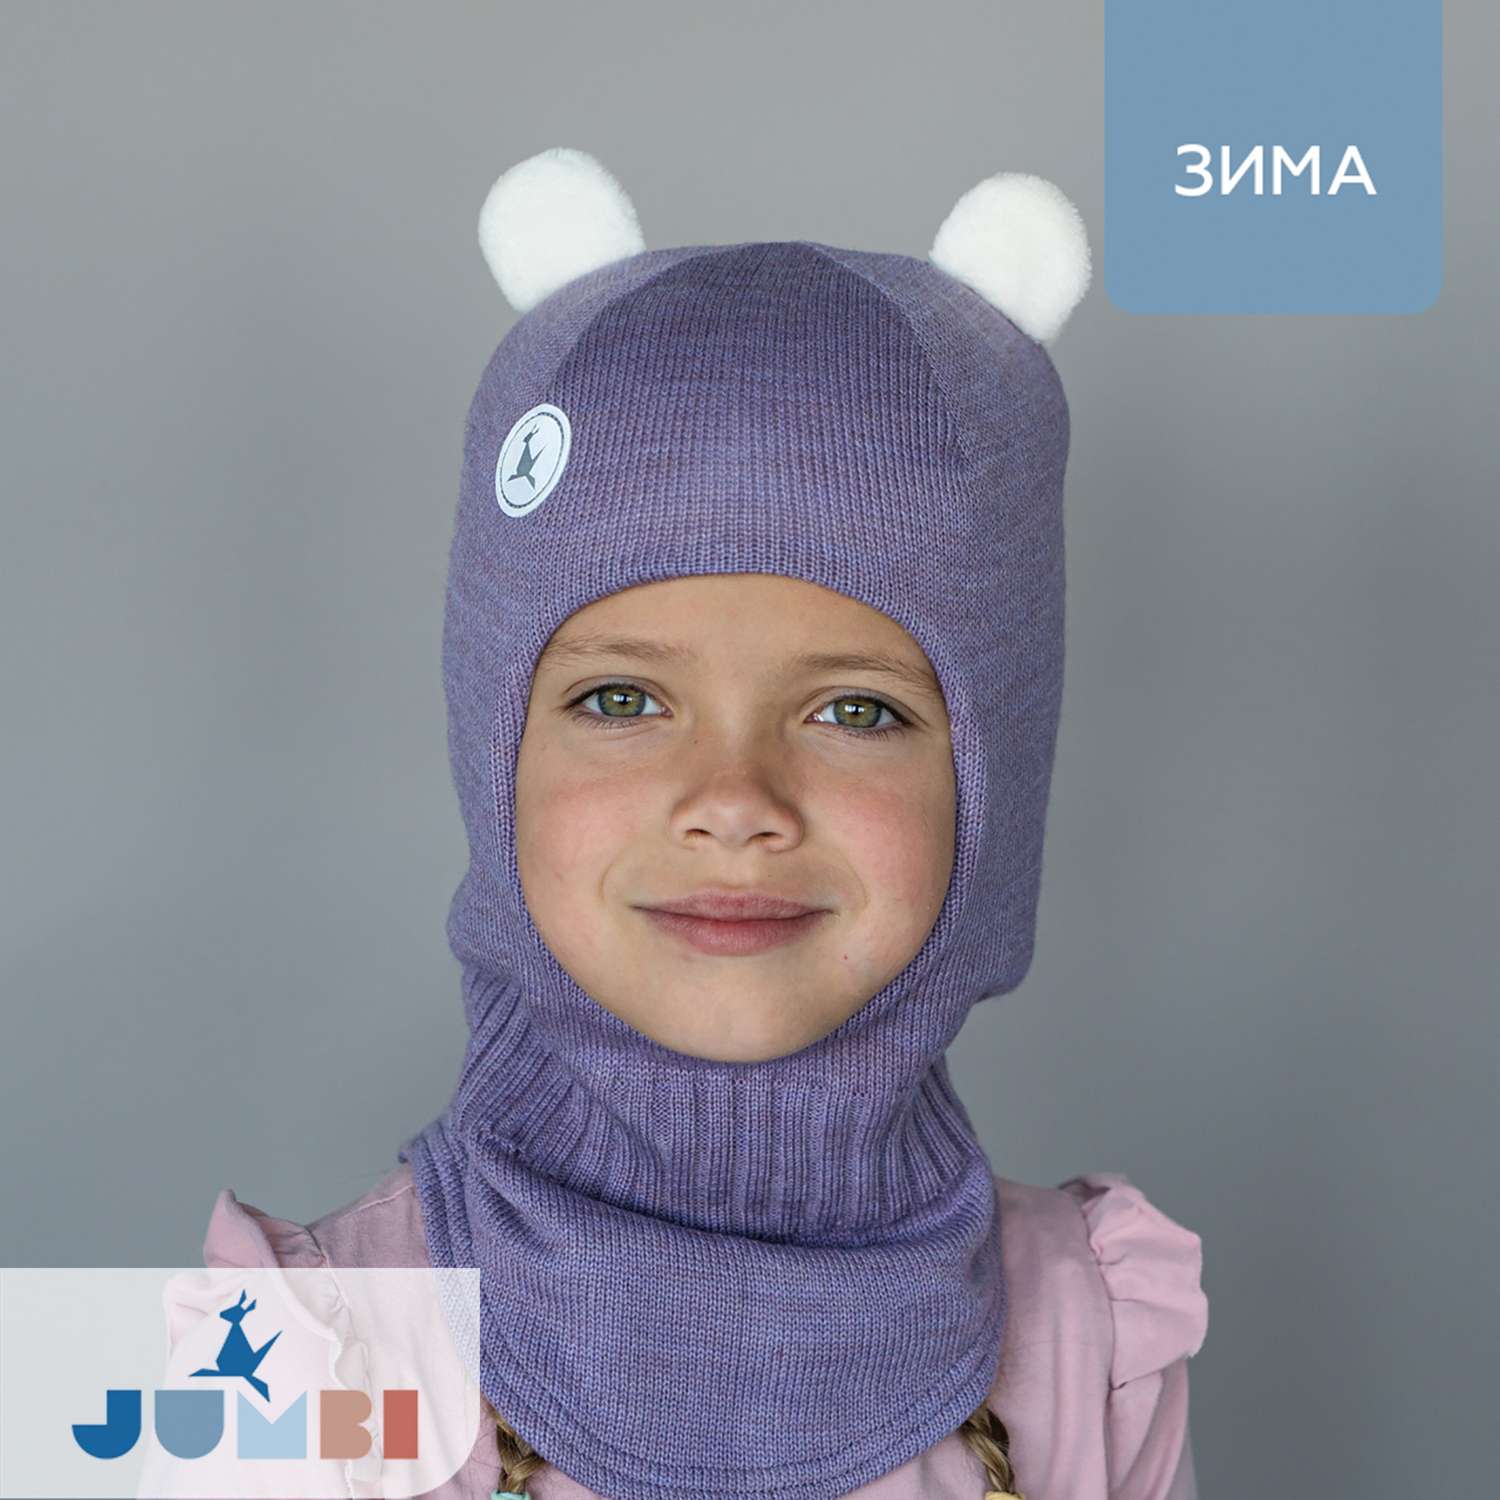 Шапка-шлем для девочки зима JUMBI 22-3012-333 - фото 2